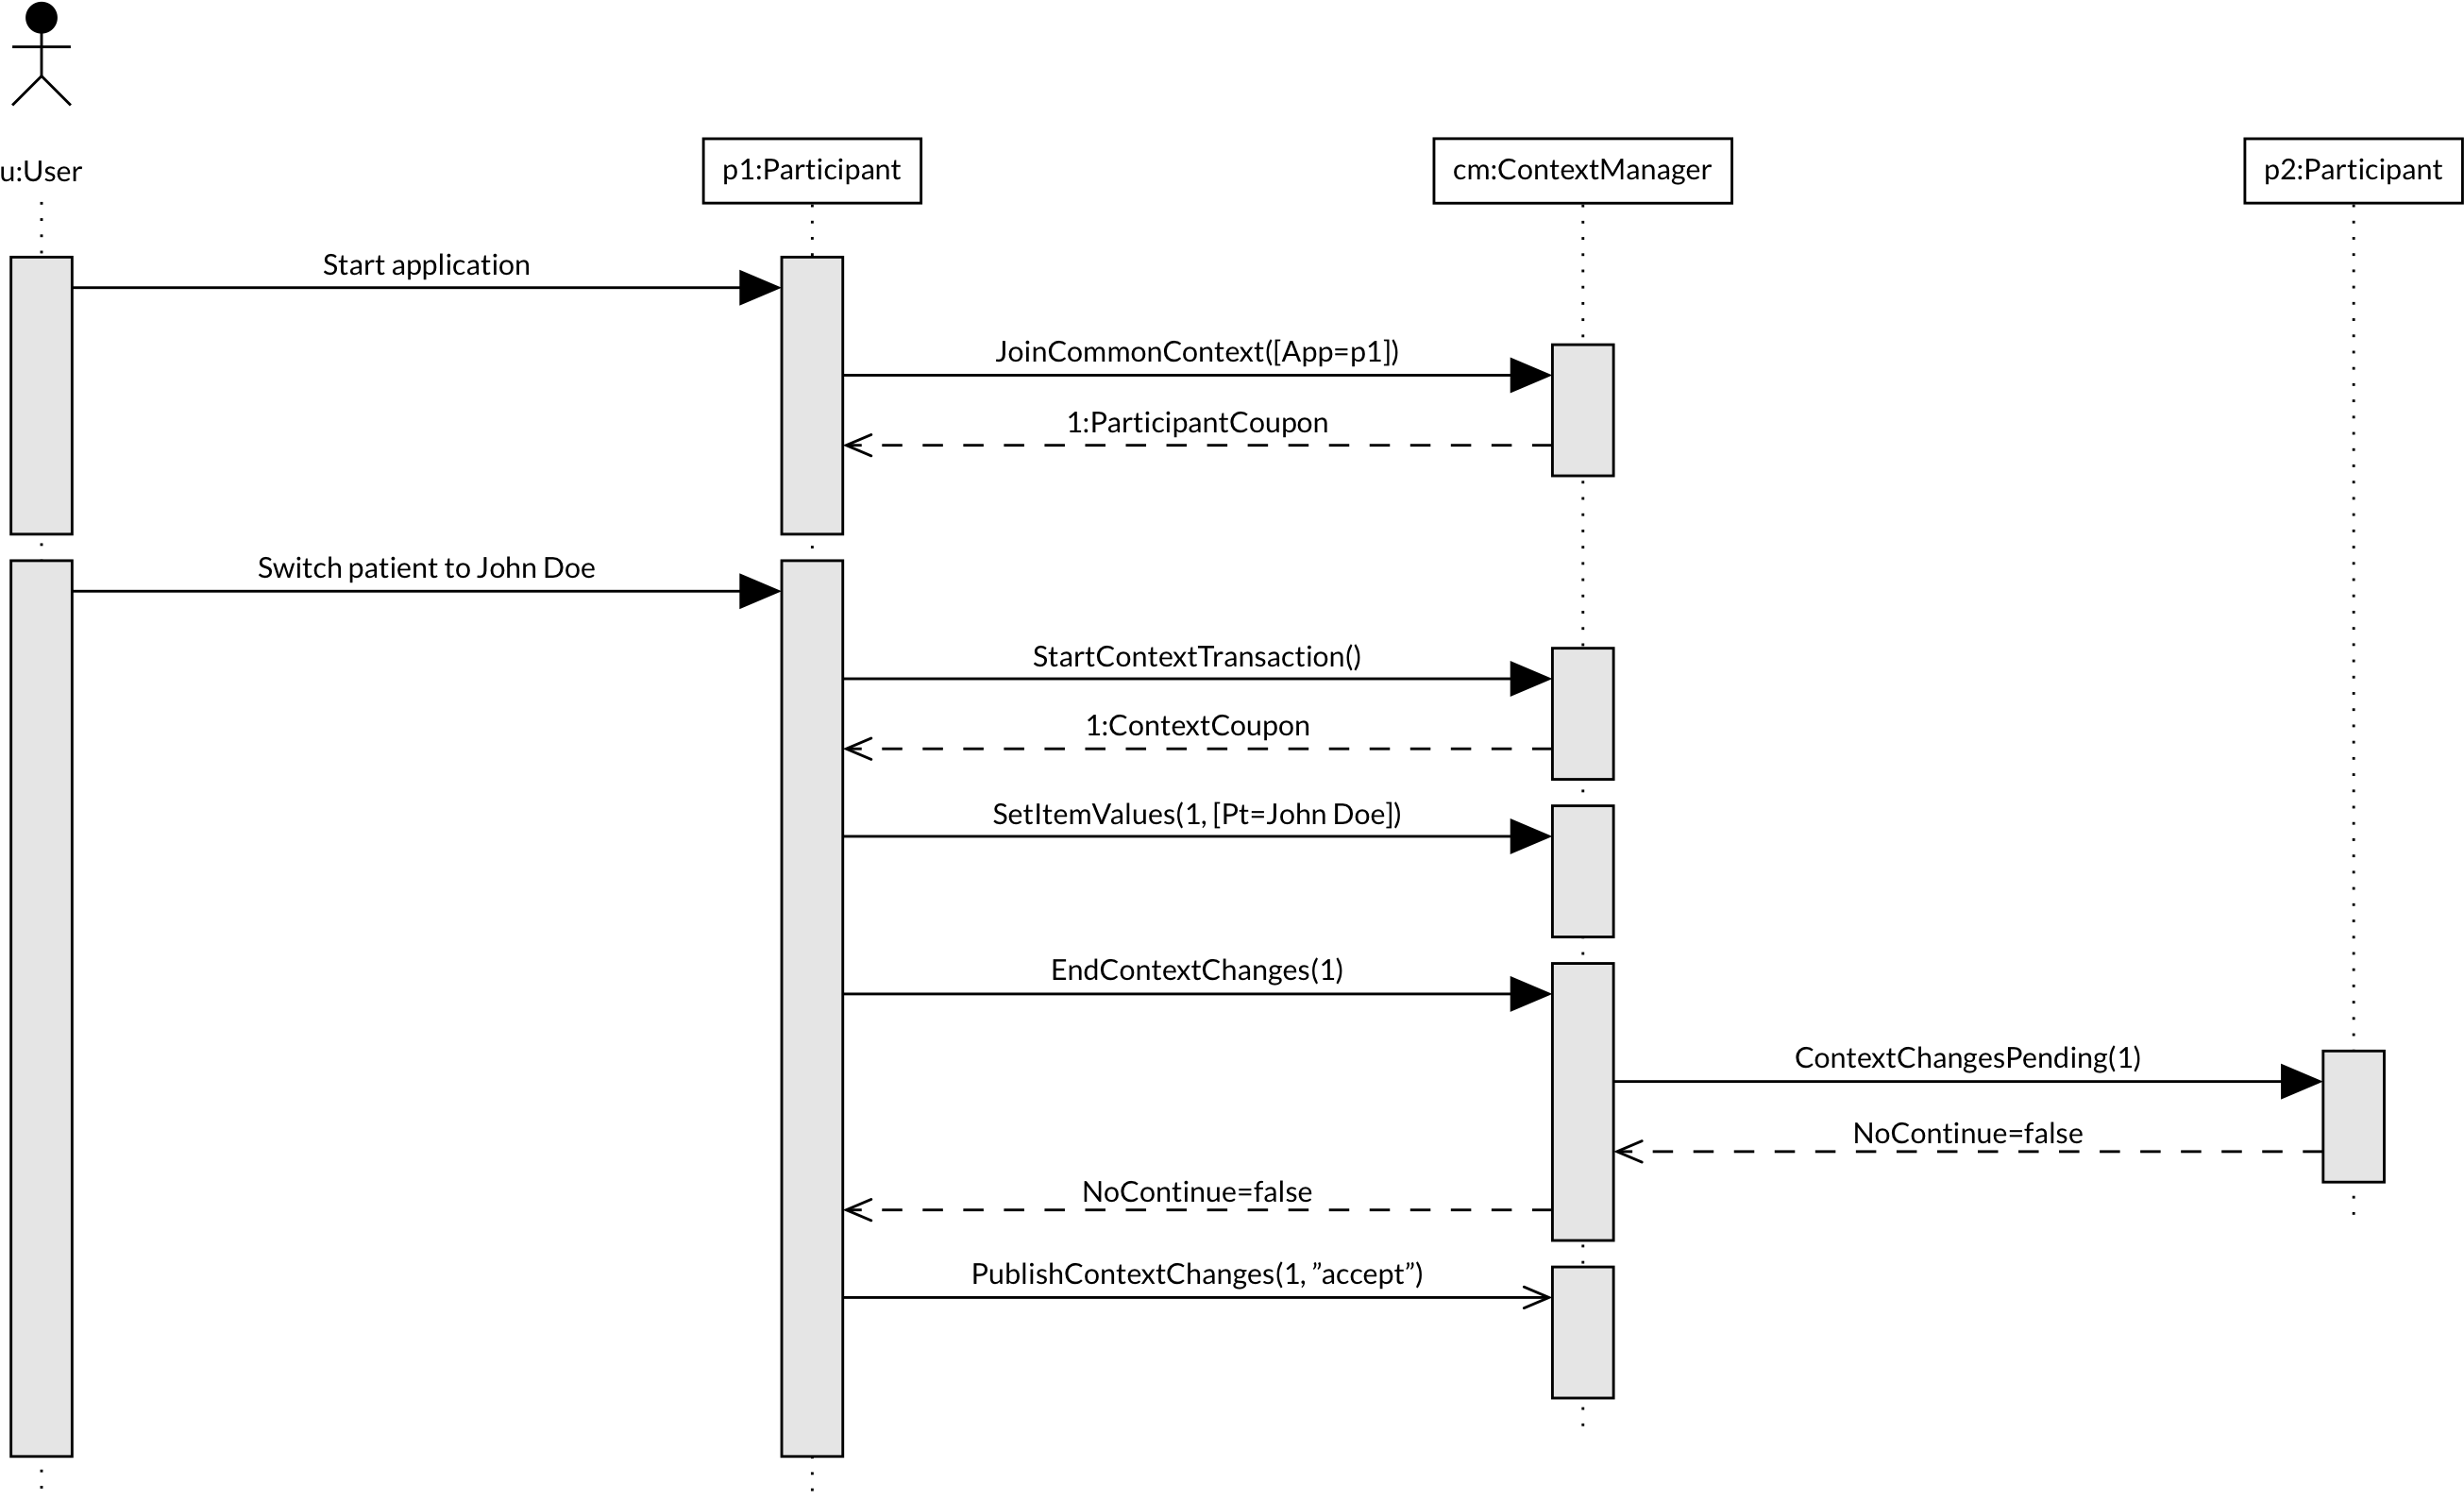 CCOW sequence diagram